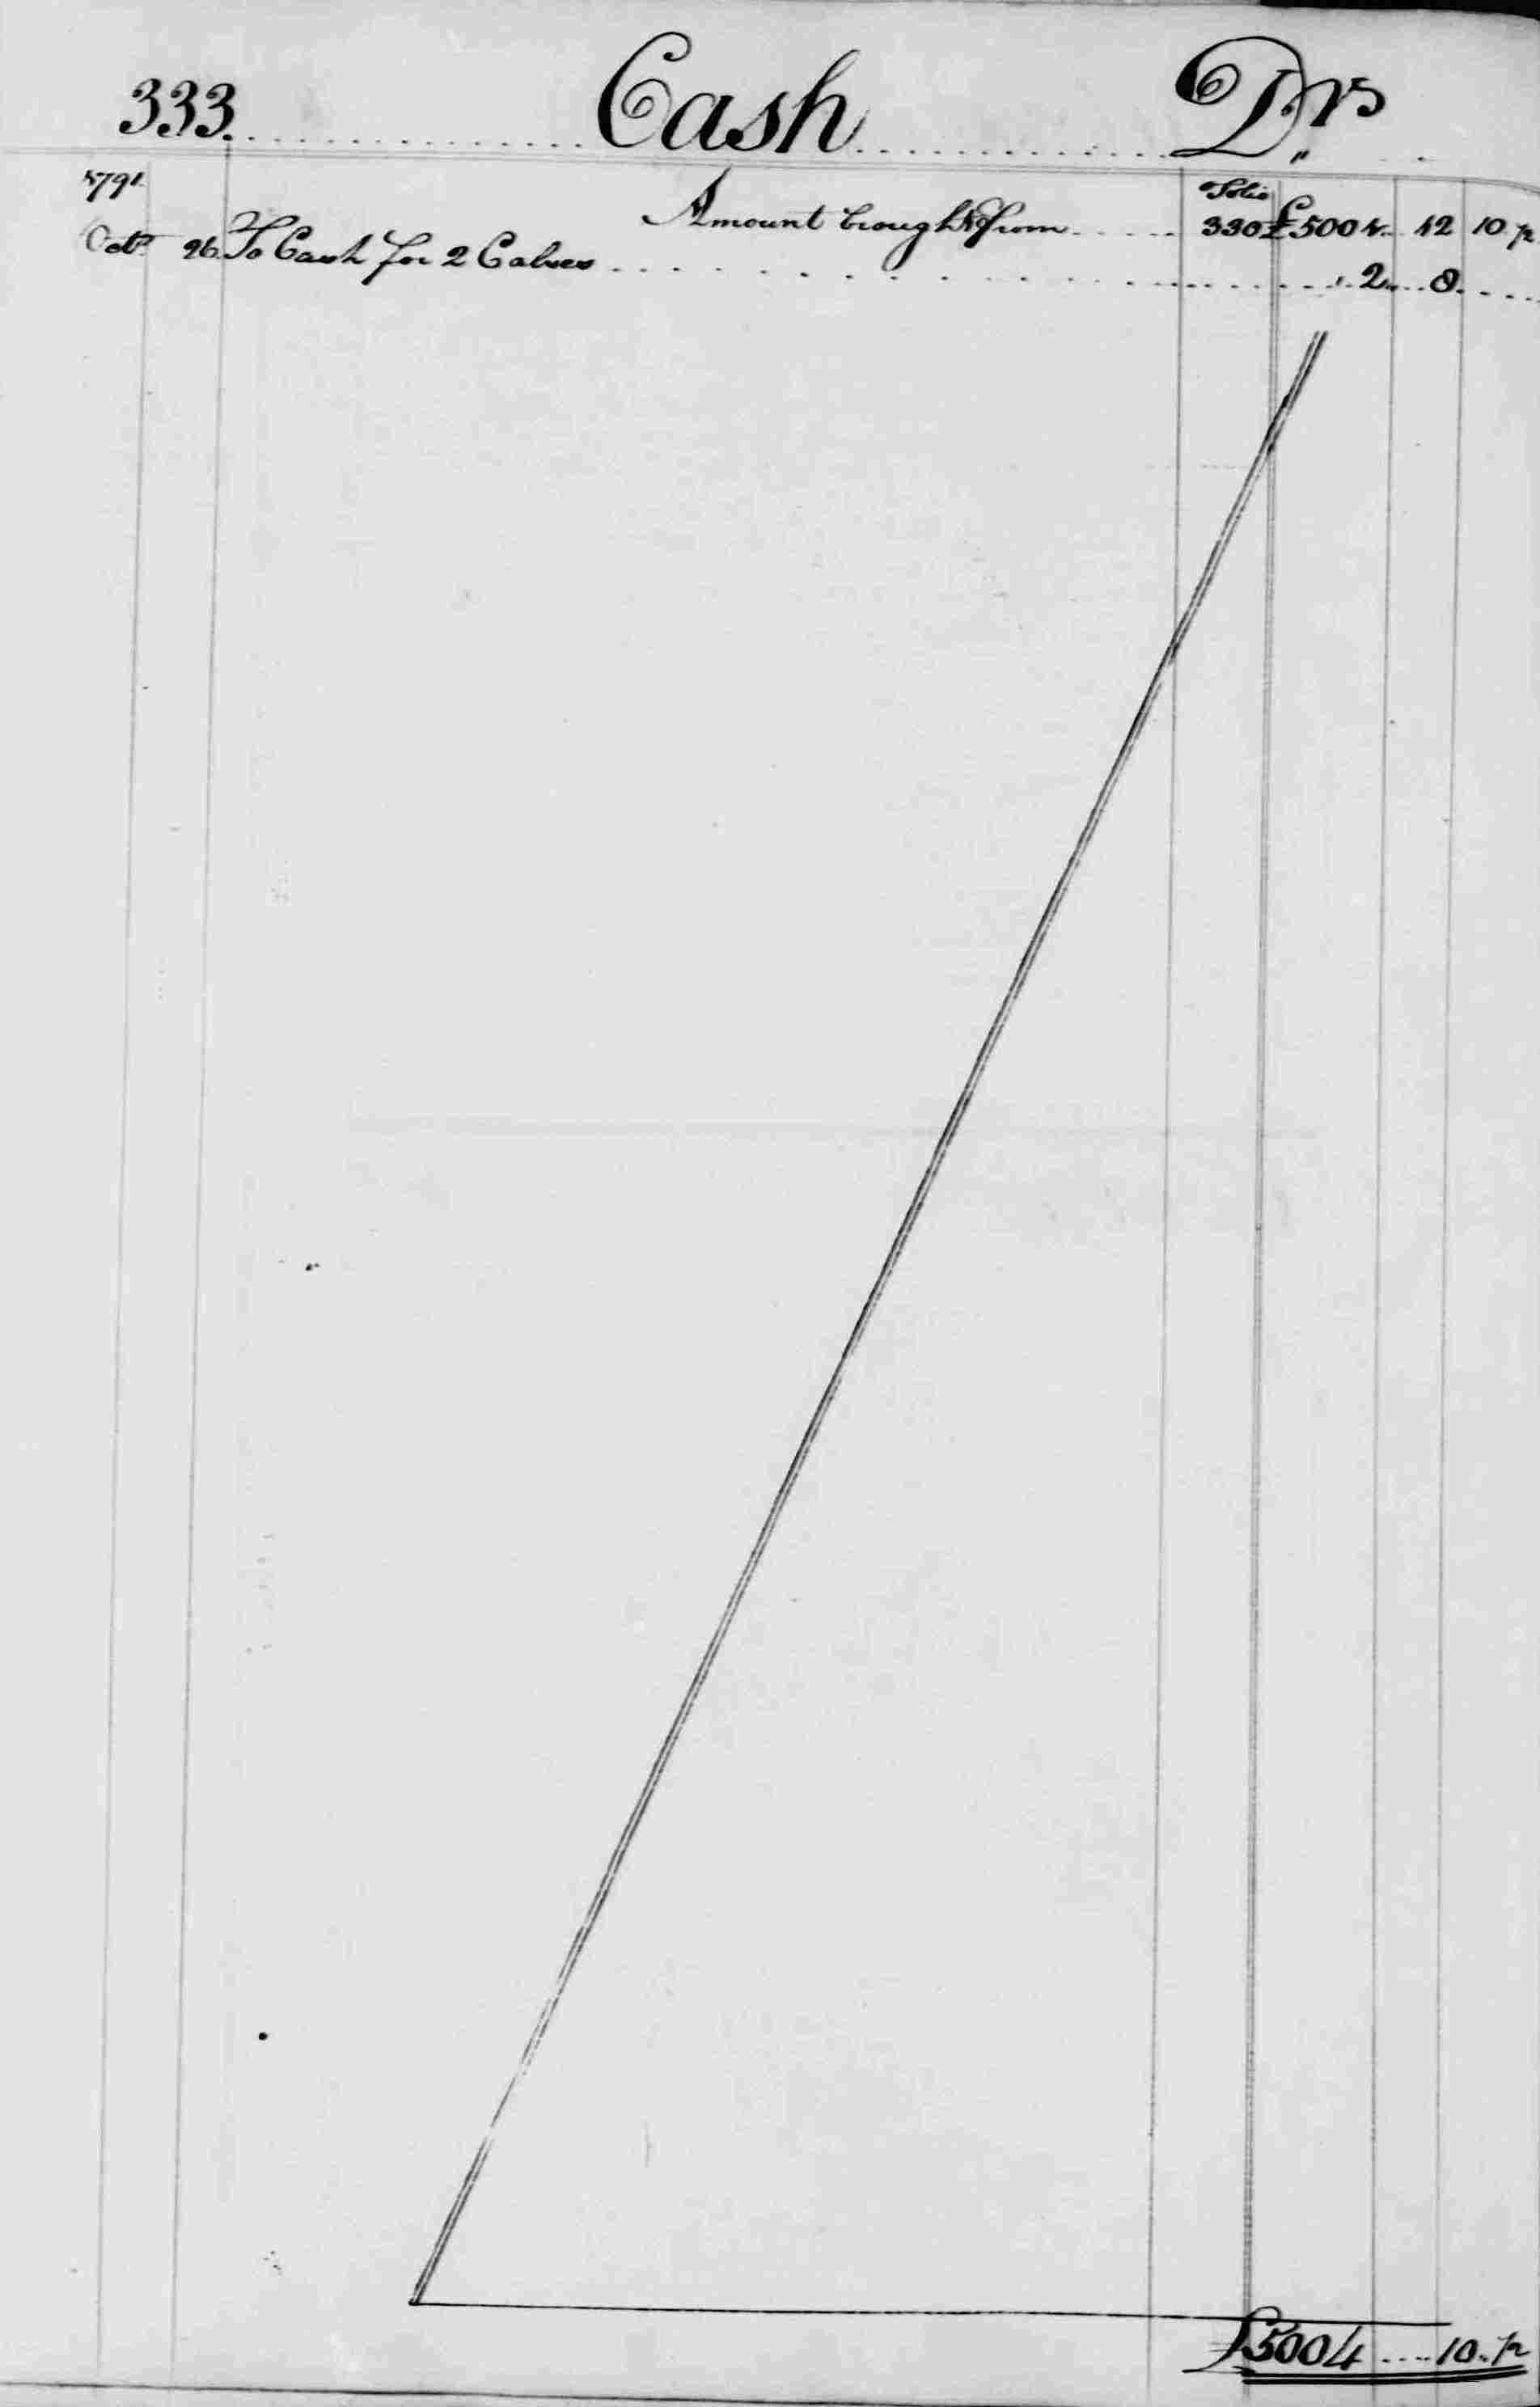 Ledger B, folio 333, left side